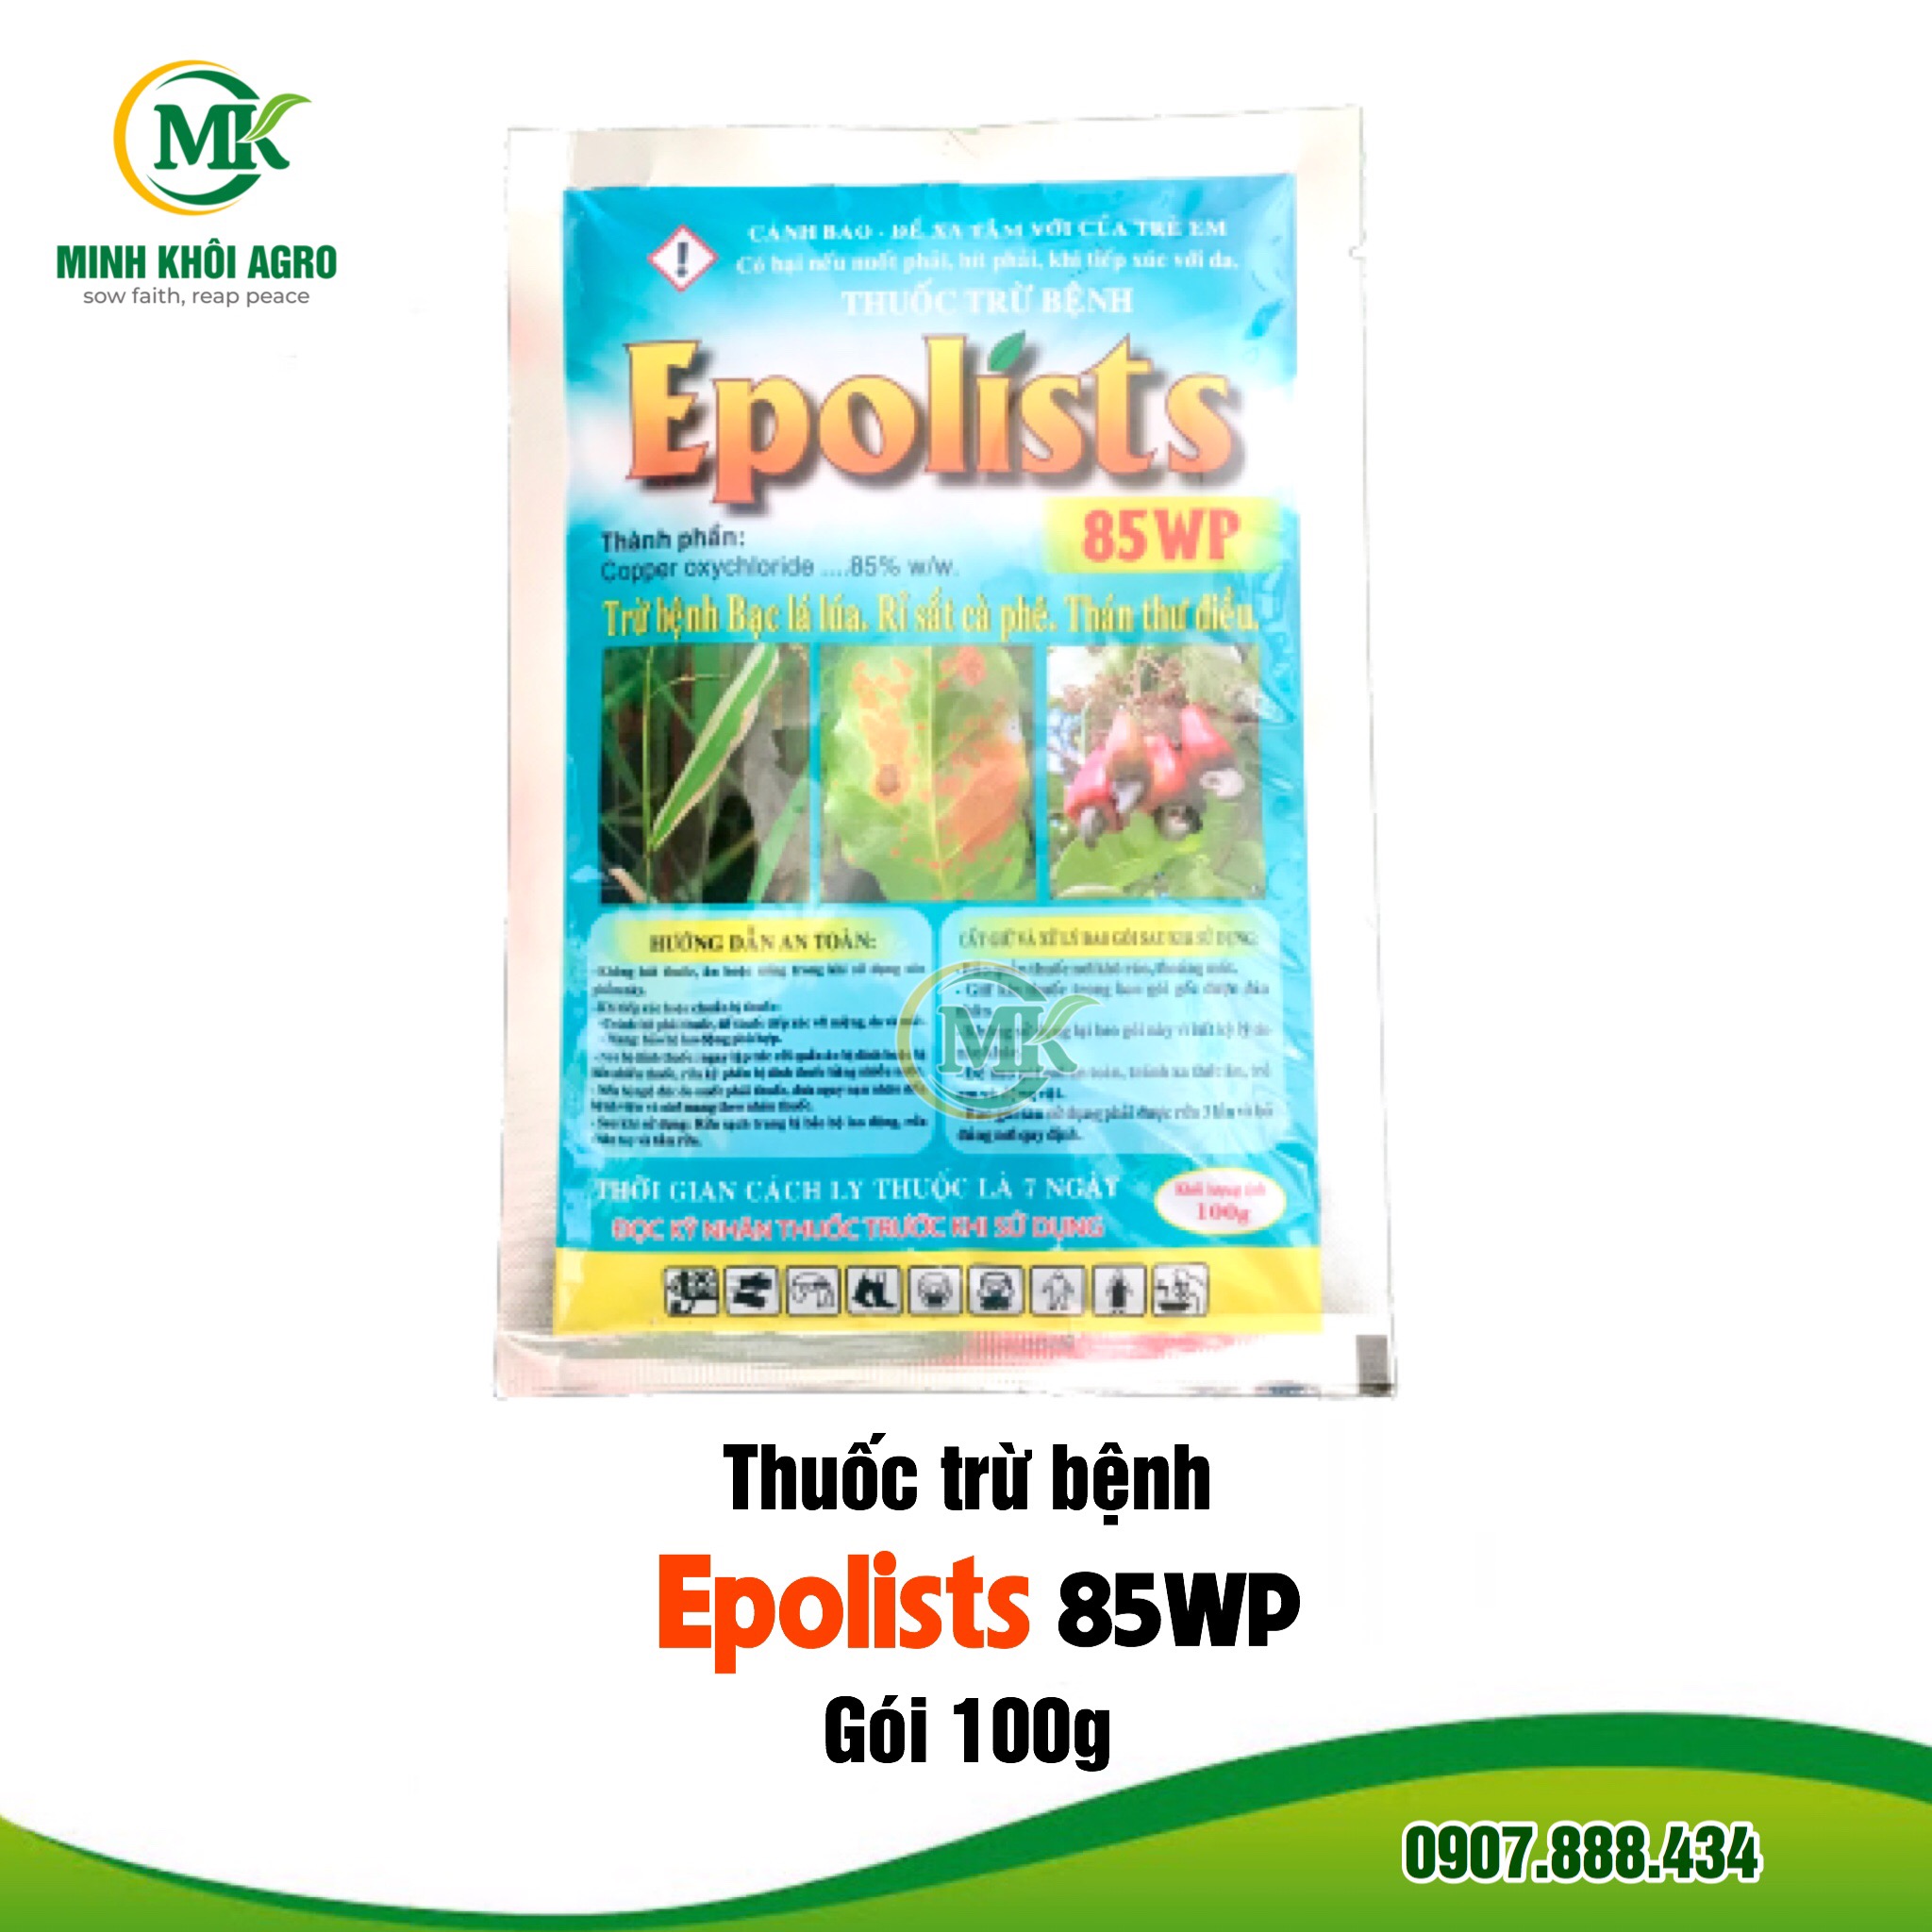 Thuốc trừ bệnh Epolists 85WP - Gói 100g